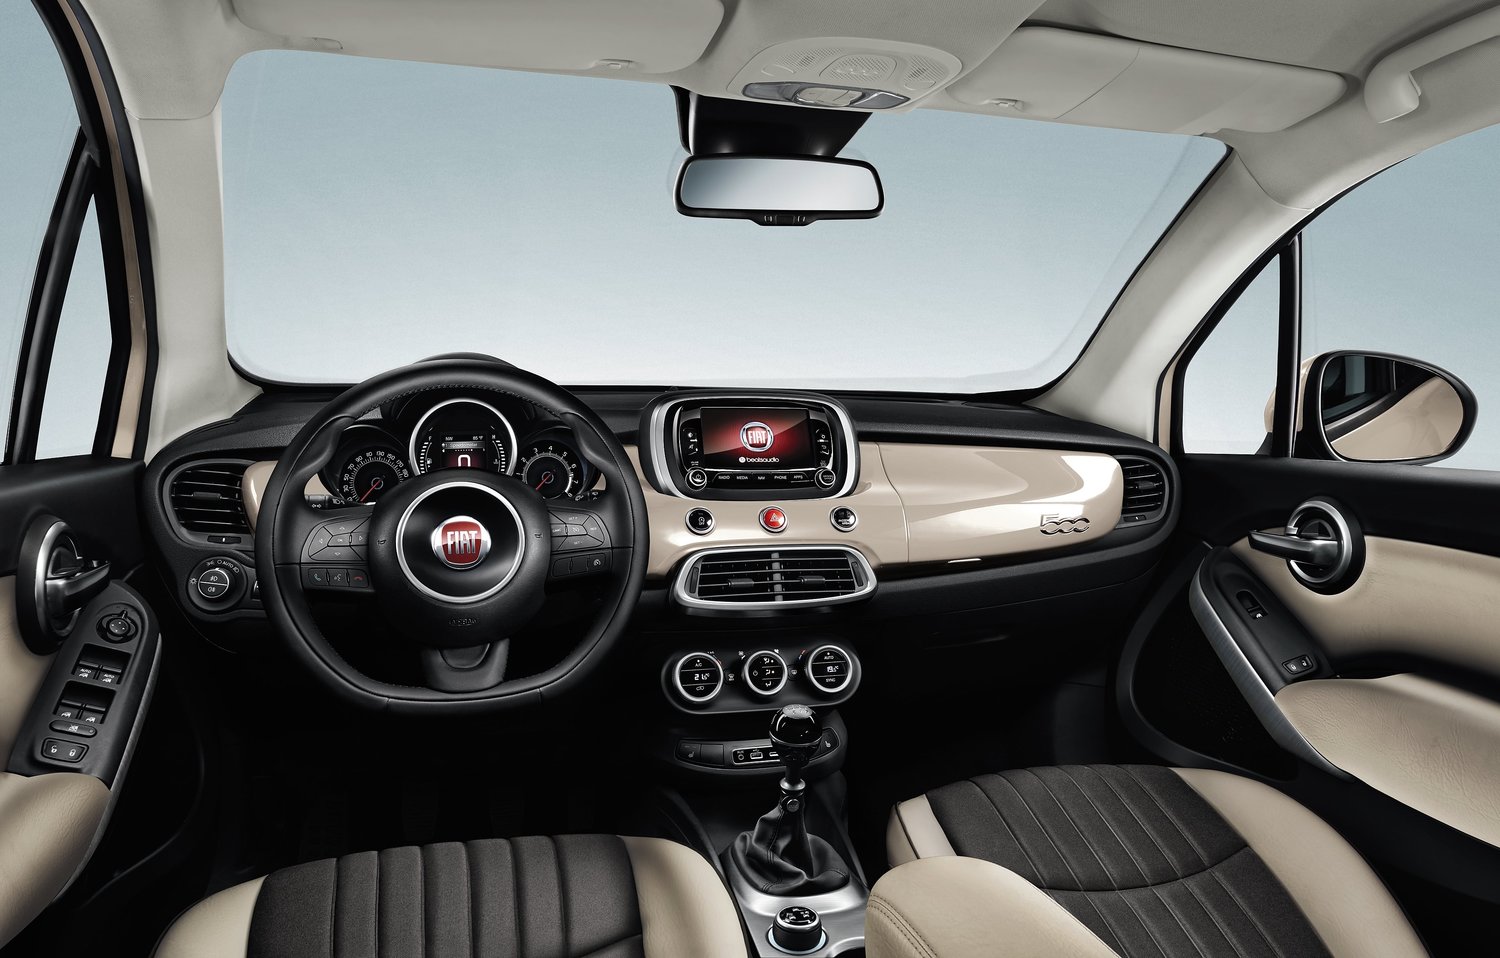 кроссовер Fiat 500X 2014 - 2016г выпуска модификация 1.4 AMT (140 л.с.)